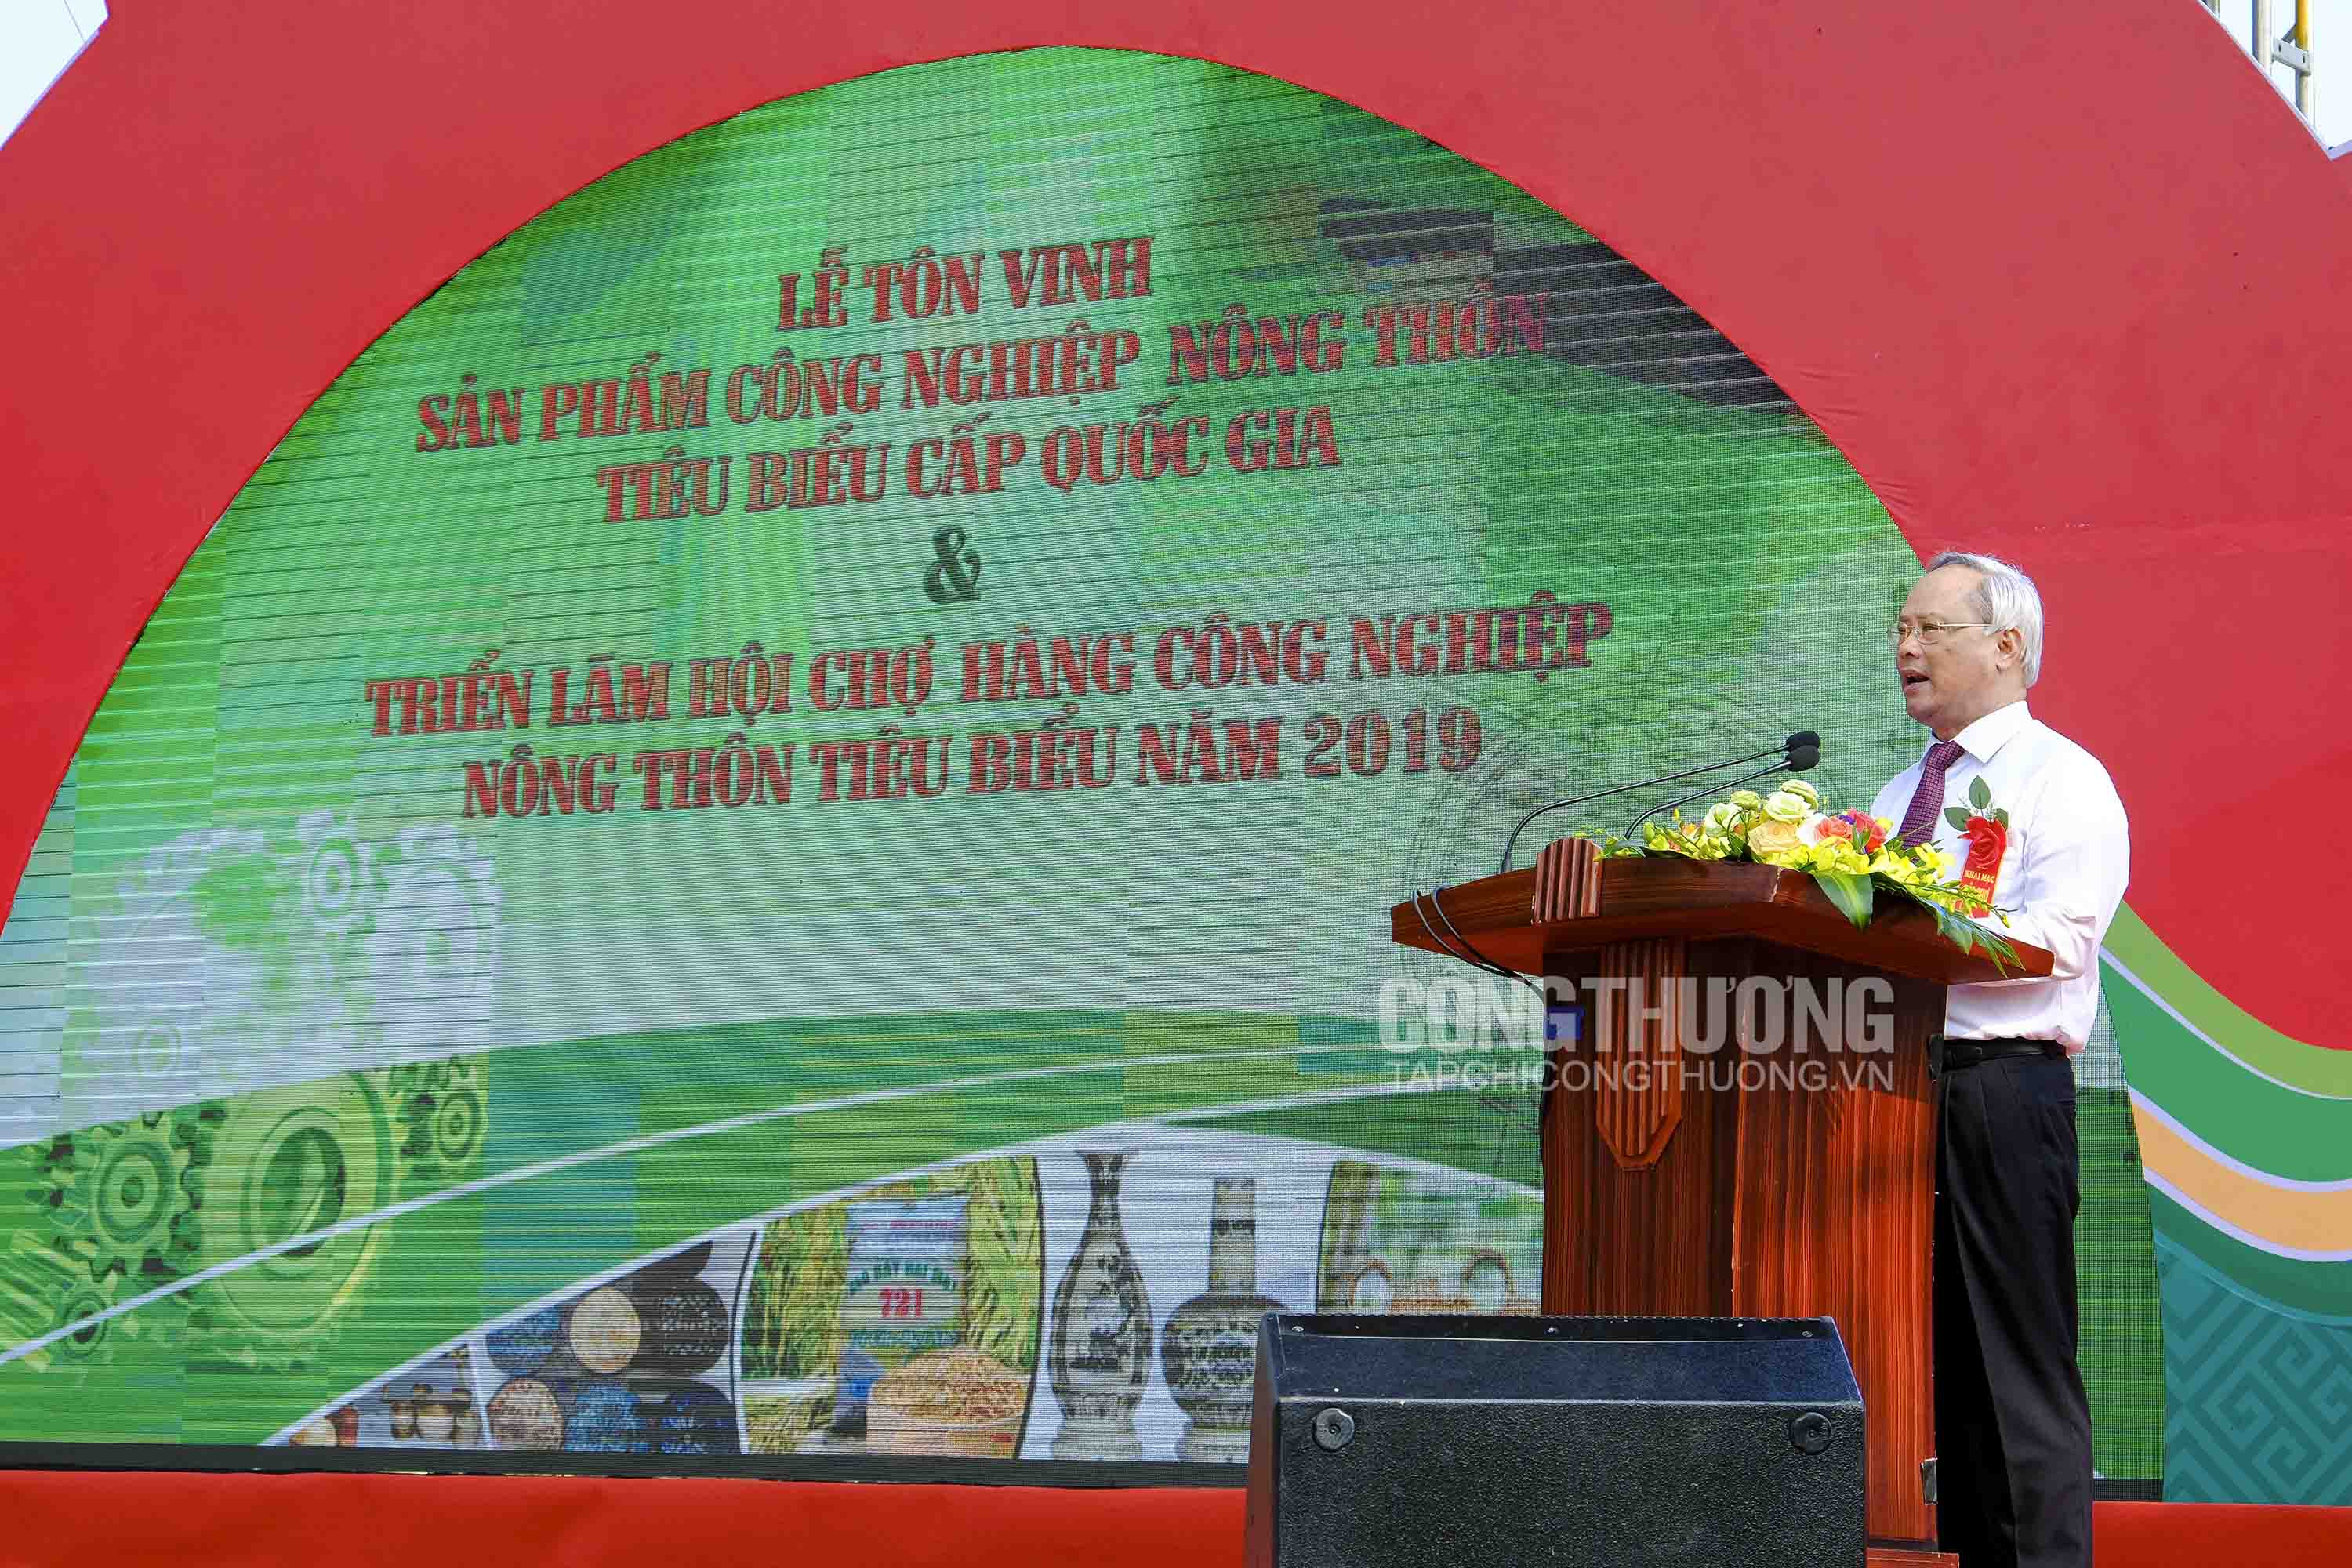 Phó Chủ tịch Quốc hội Uông Chu Lưu phát biểu tại Lễ tôn vinh, trao Giấy chứng nhận sản phẩm công nghiệp nông thôn tiêu biểu cấp quốc gia năm 2019